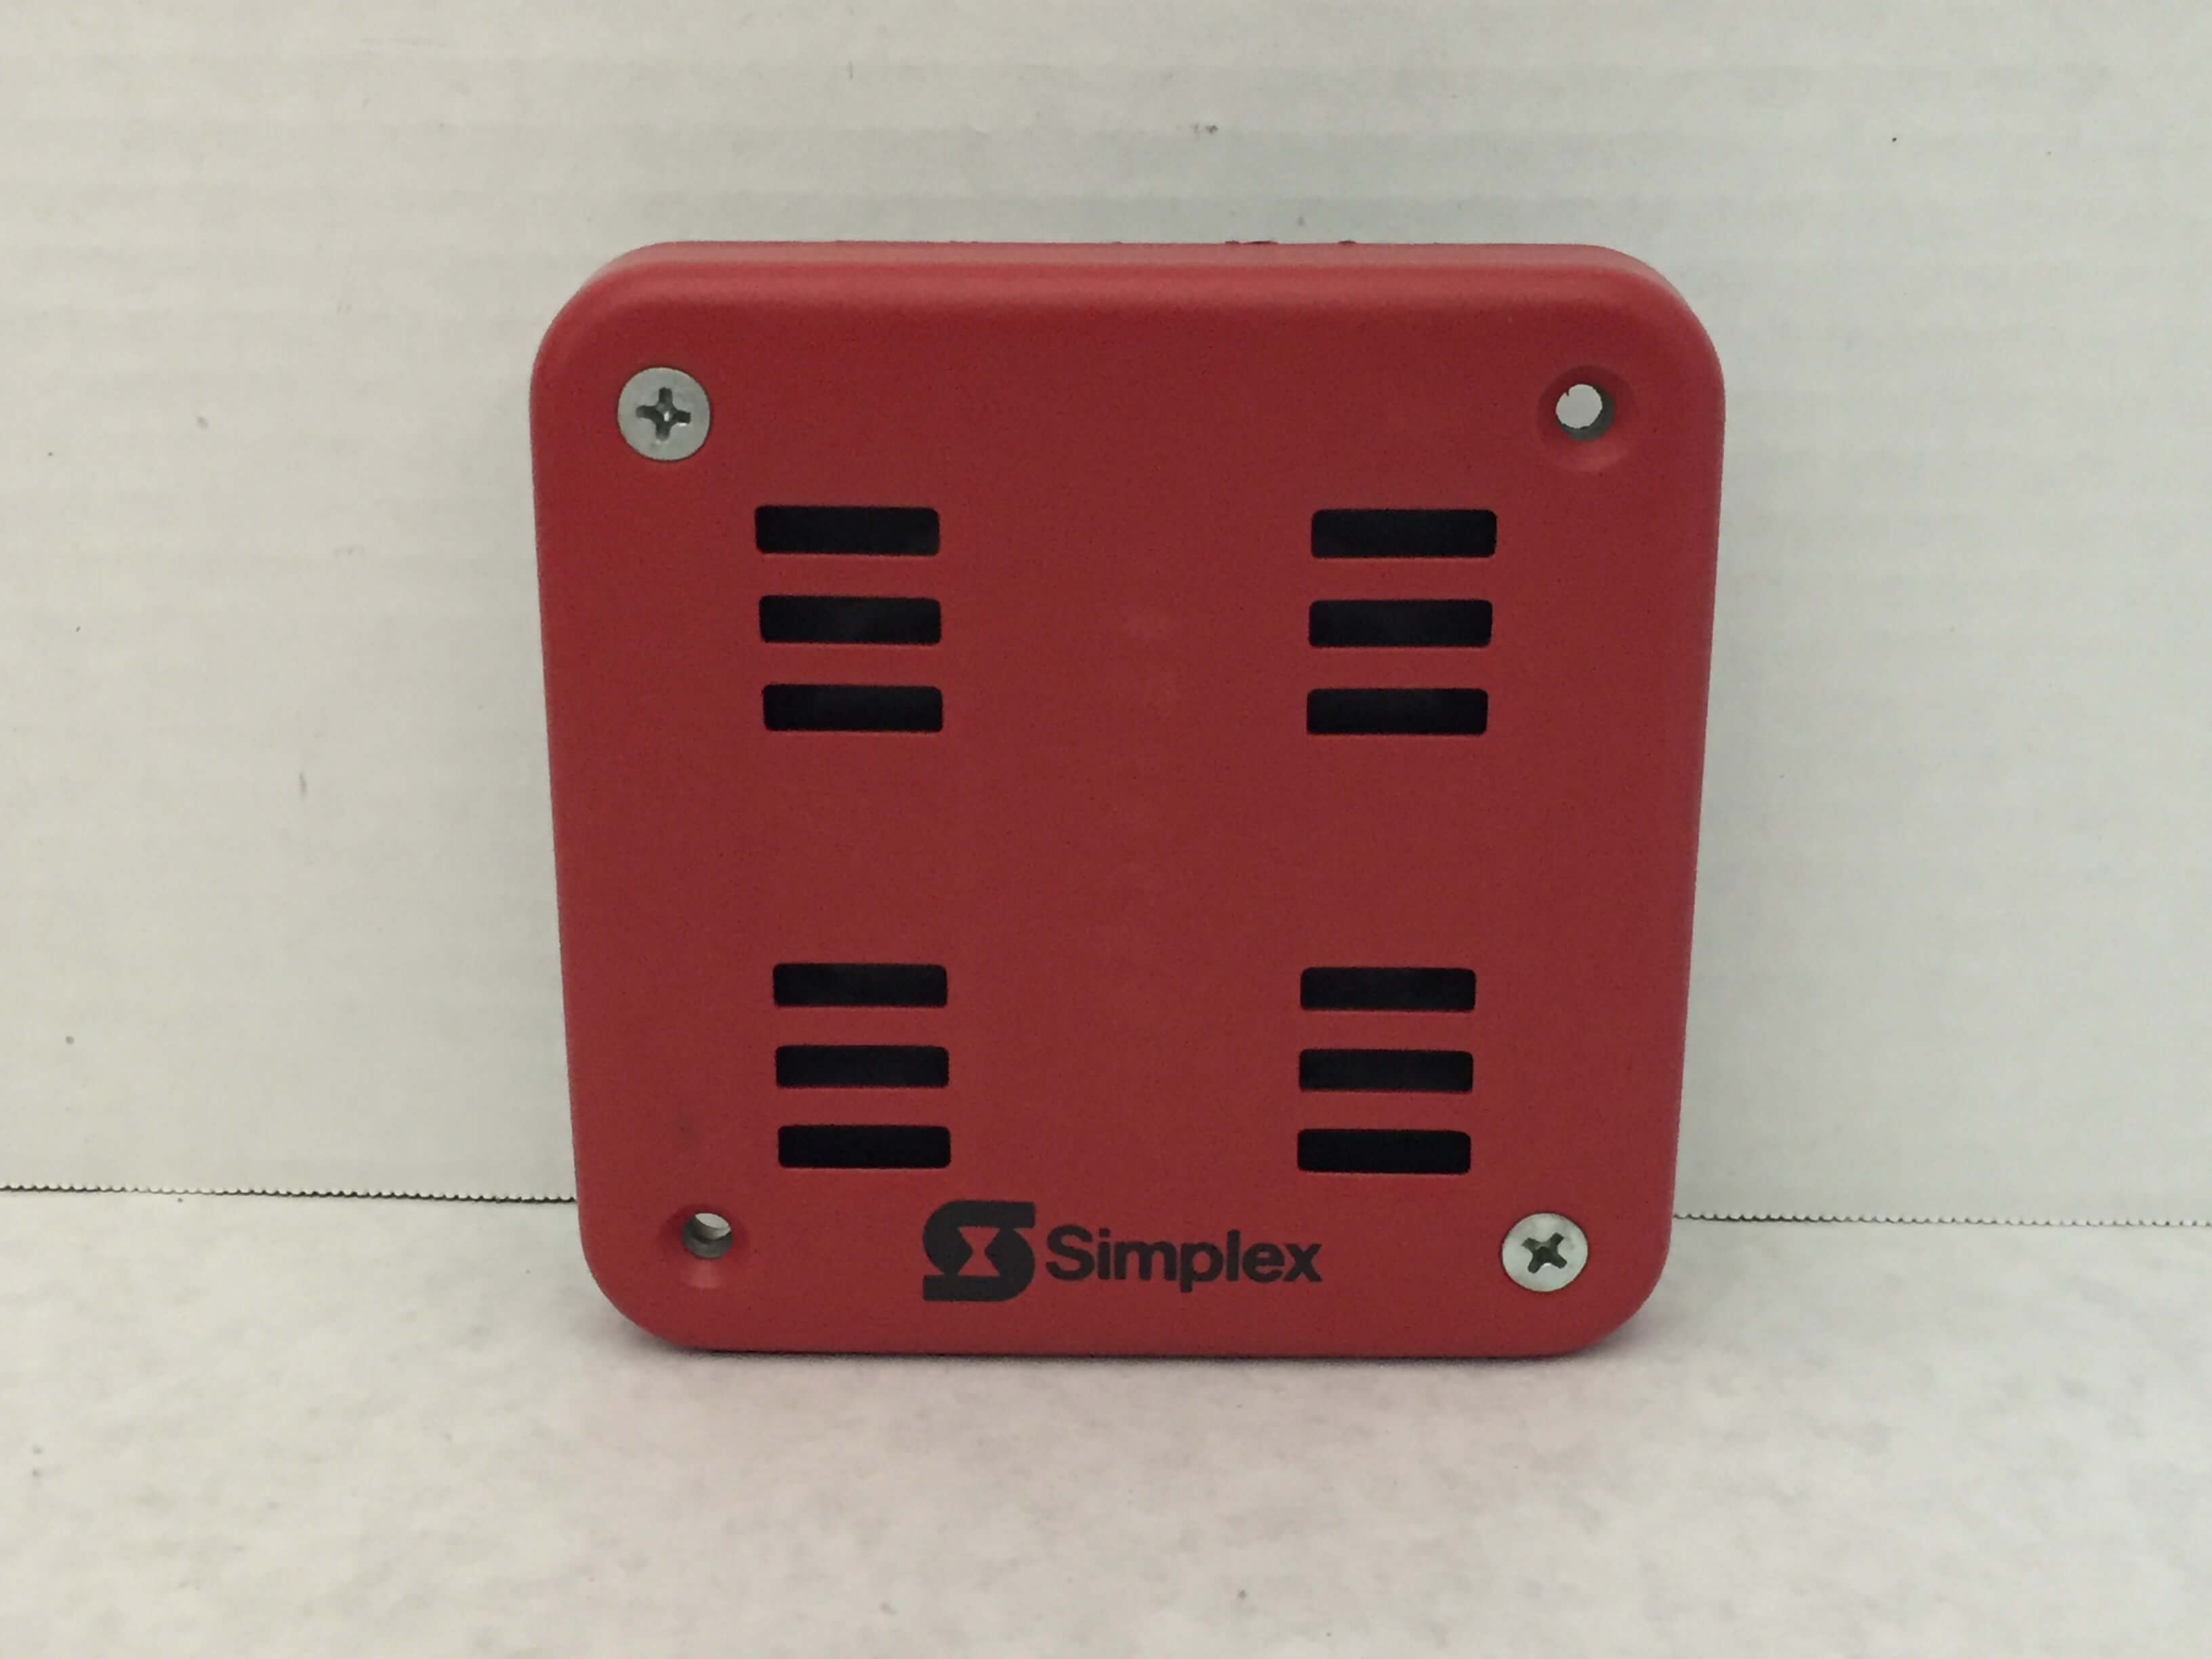 Simplex 2901-9838 - FireAlarms.tv - jjinc24/U8oL0's Fire Alarm ...